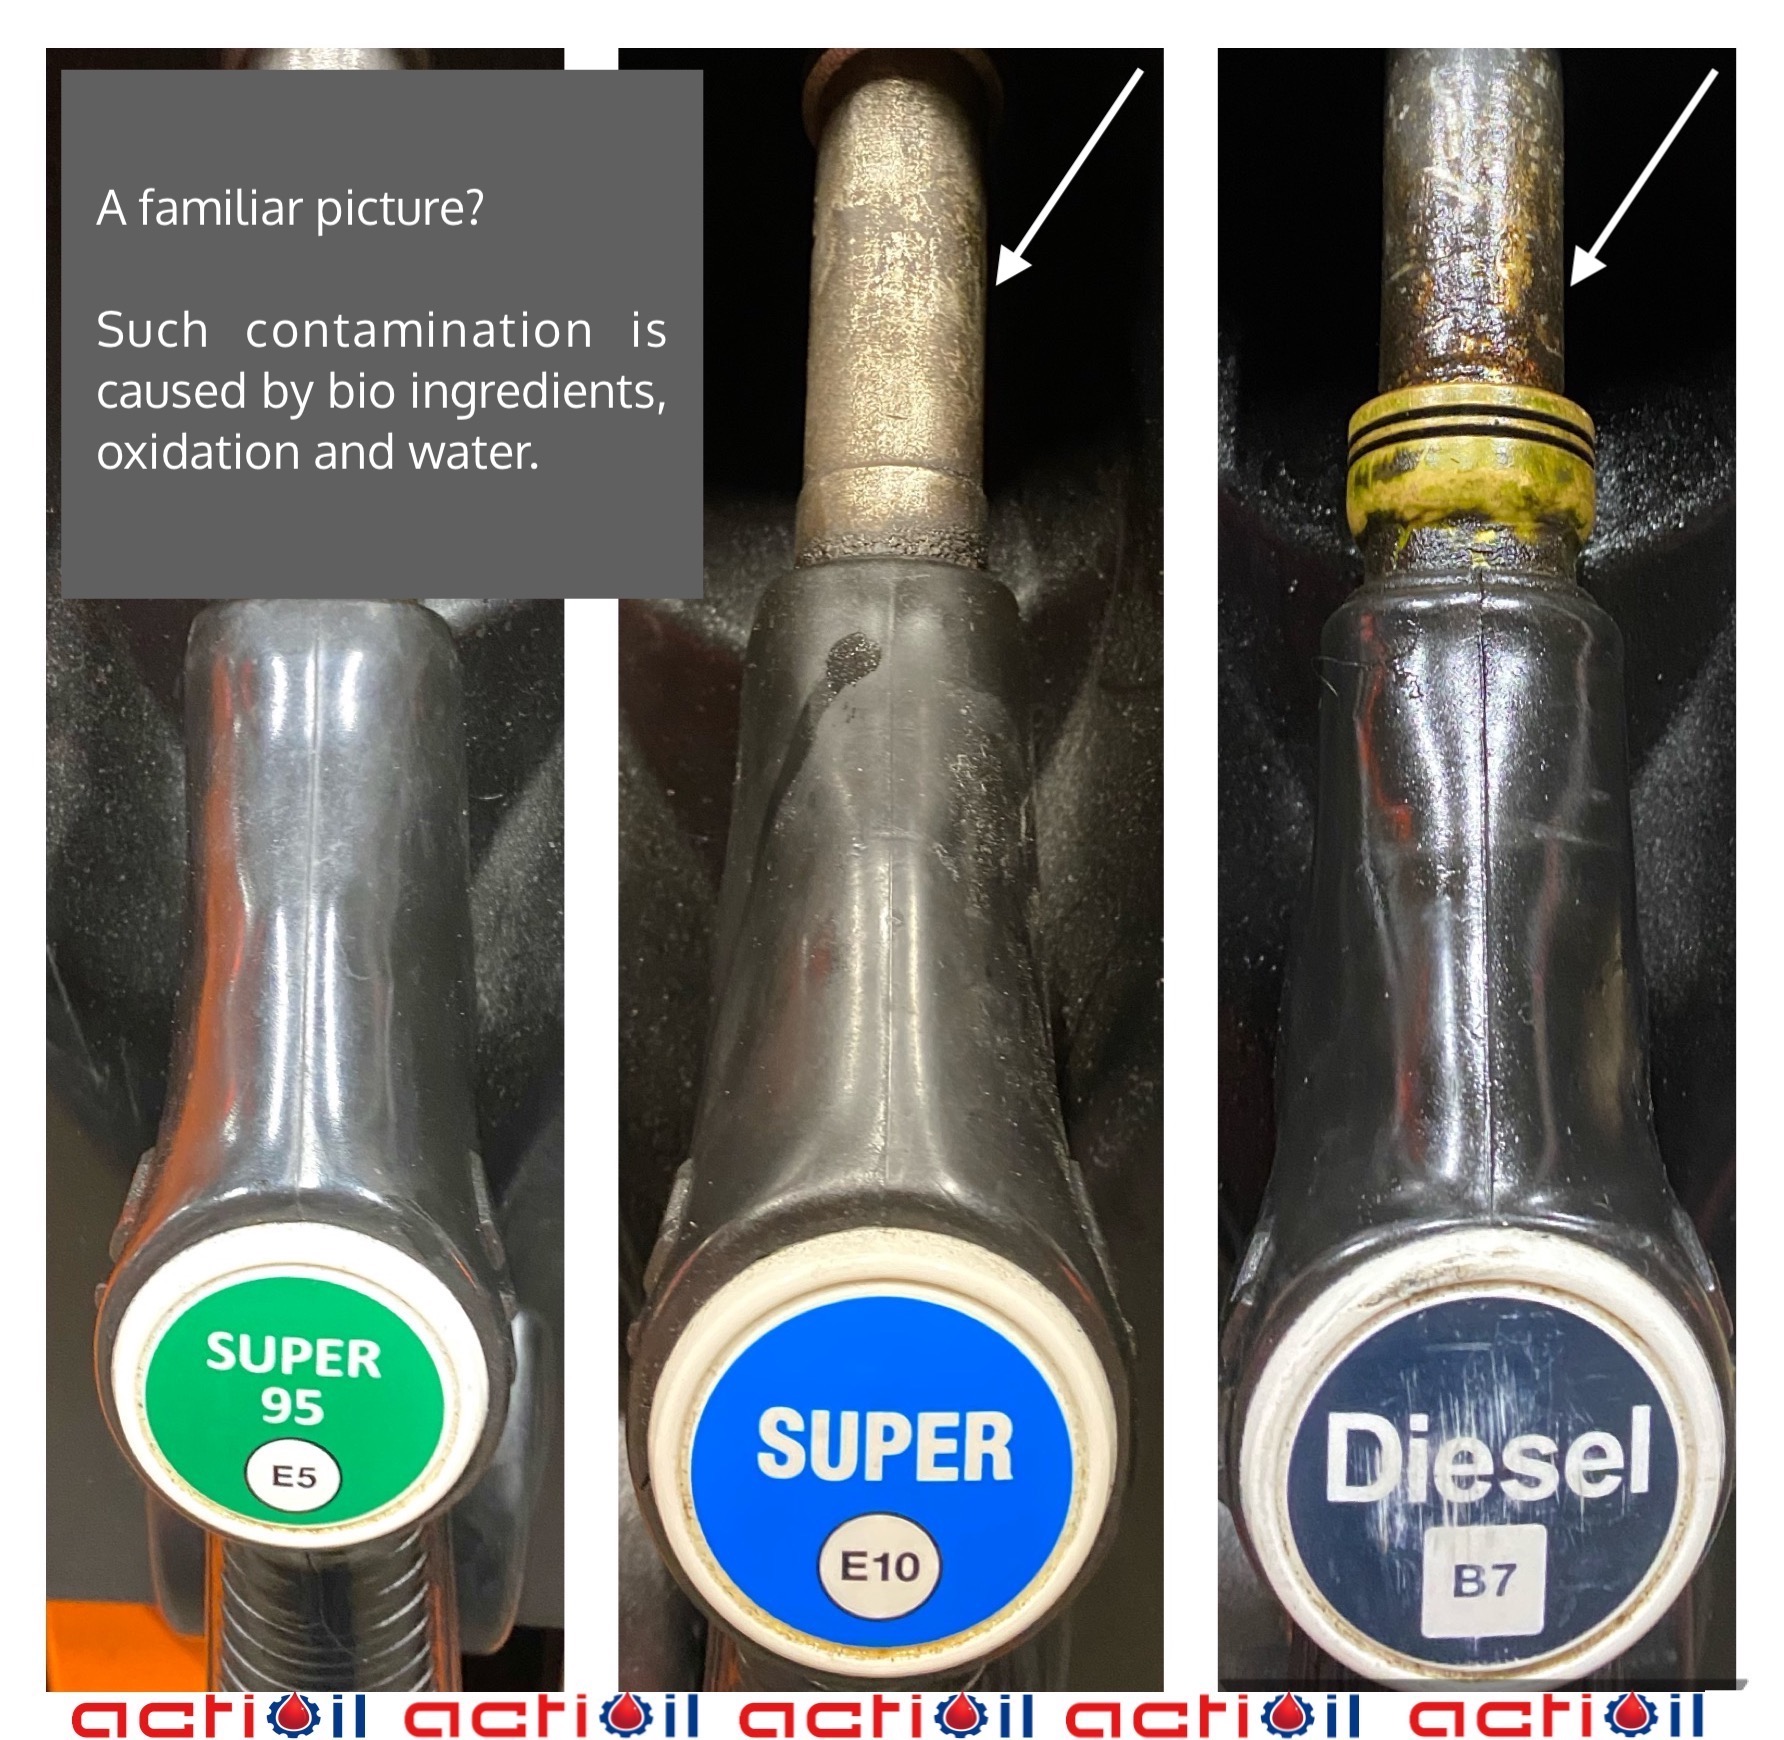 Bilder von der Tankstelle. Zeigt drei Pumpenpistolen für: Superbenzin 95, Superbenzin E10, Diesel mit Biodiesel B7